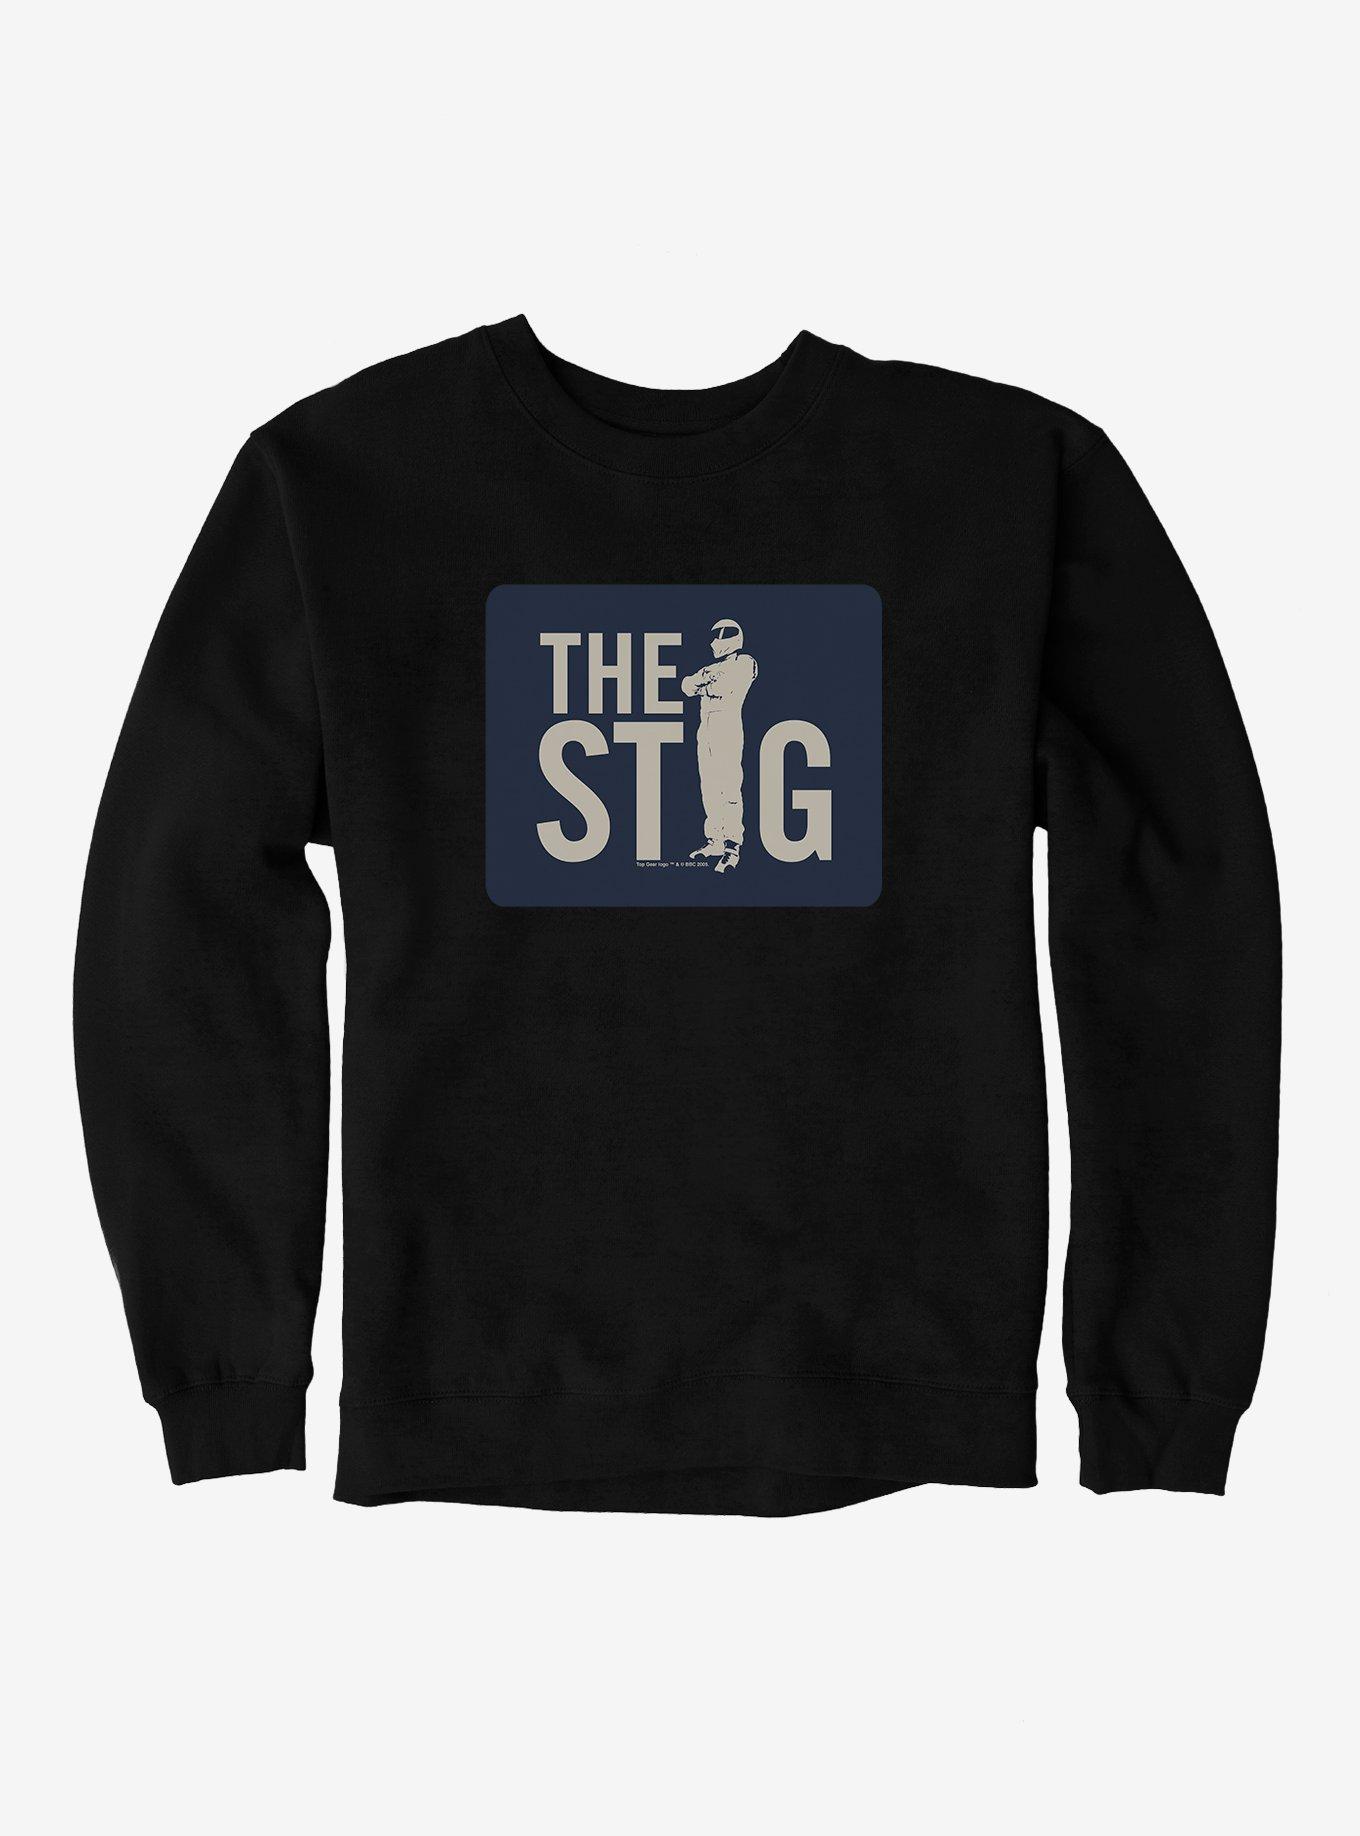 Top Gear Stig Stance Sign Sweatshirt